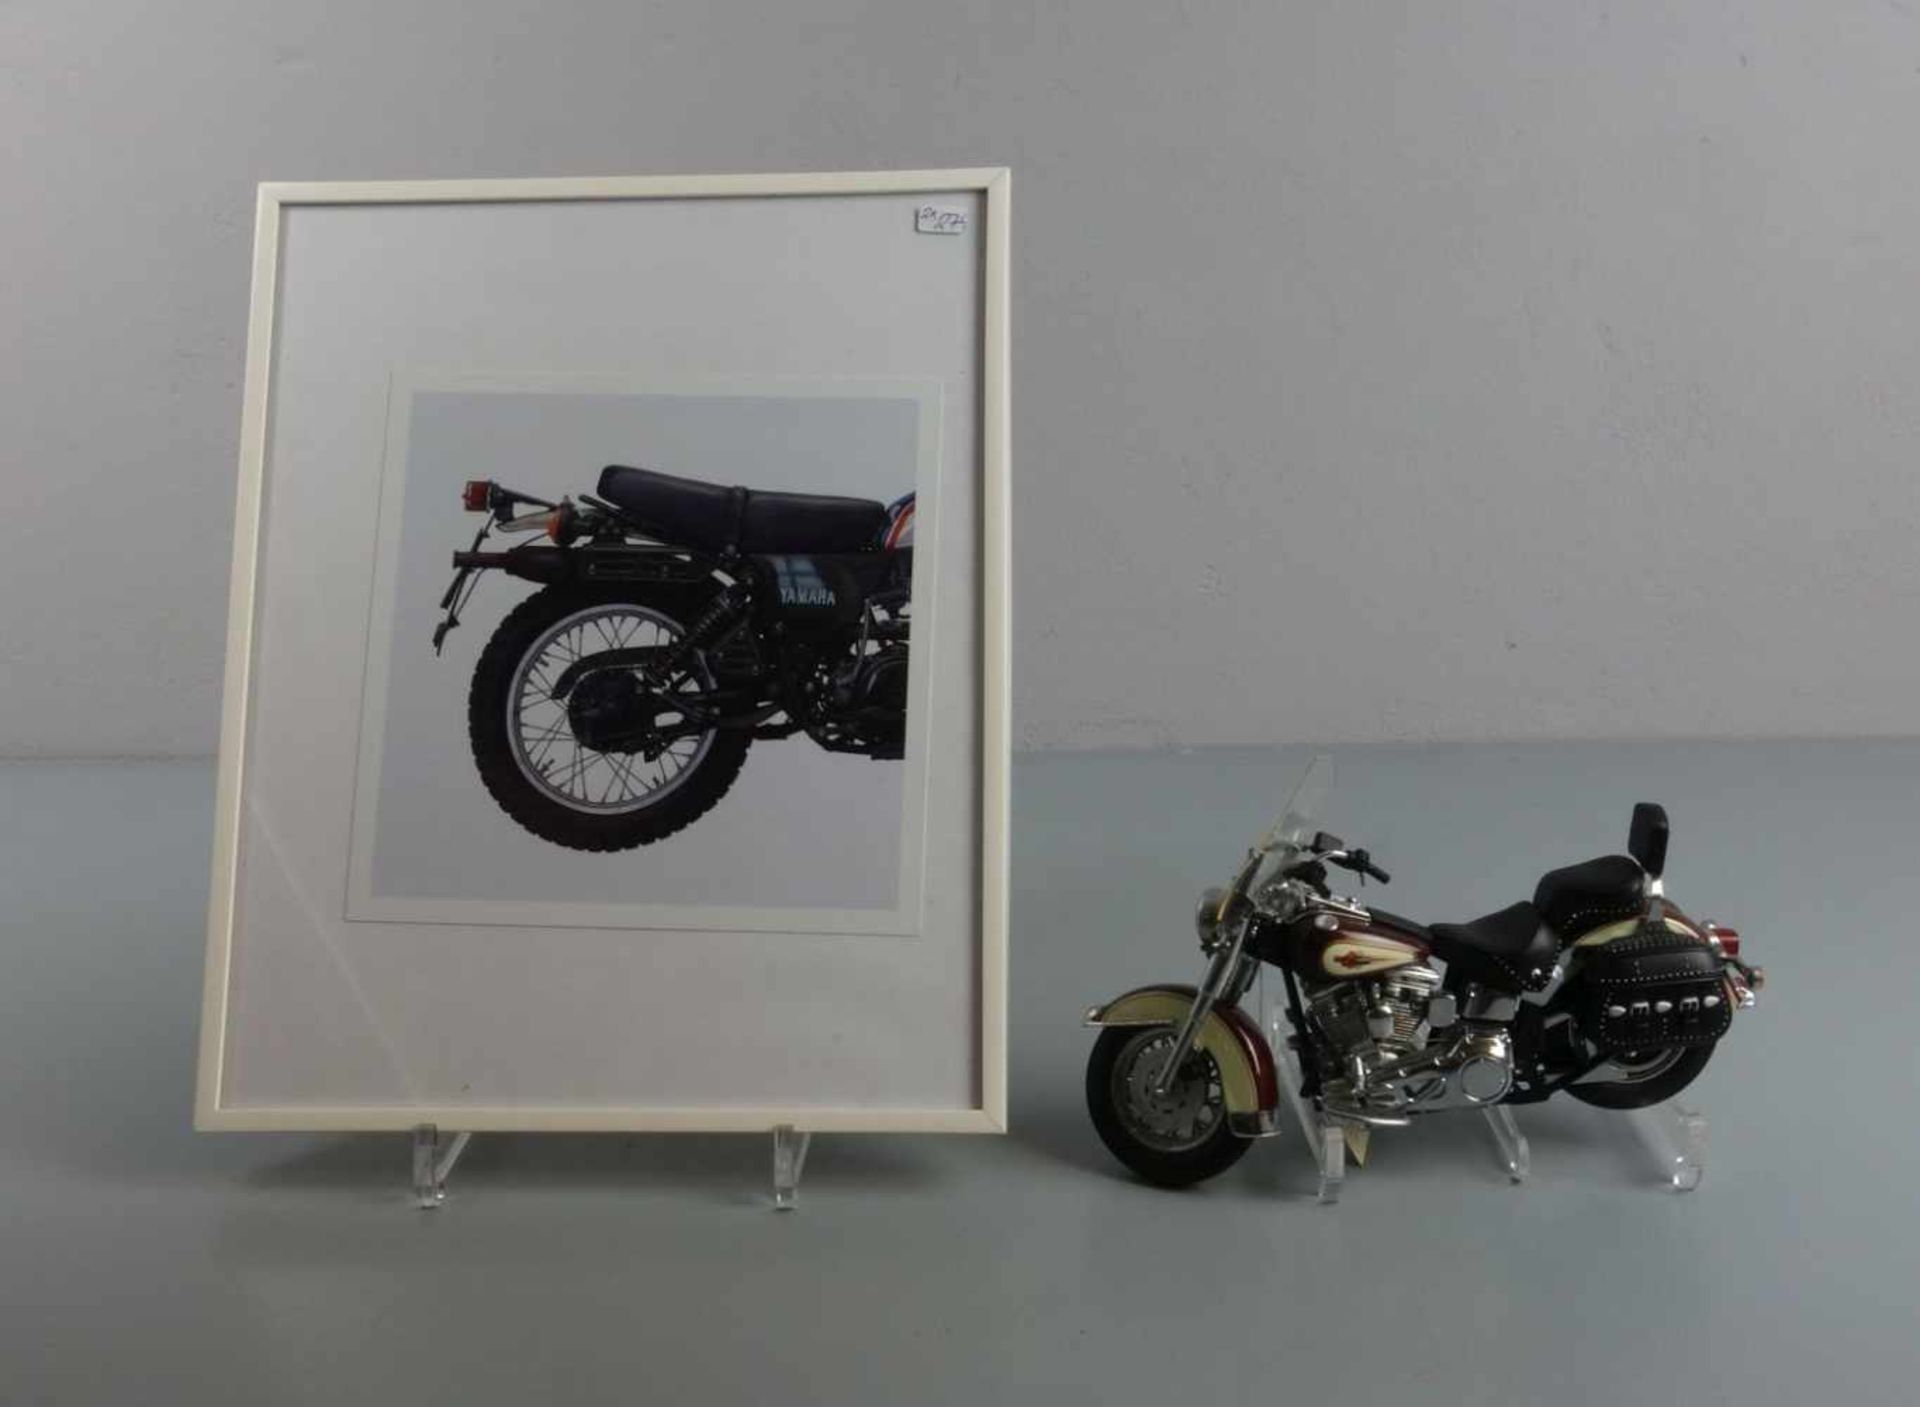 HARLEY DAVIDSON - MOTORRAD - MODELL: Franklin Mint Precision Models "Harley Davidson Heritage - Image 2 of 4